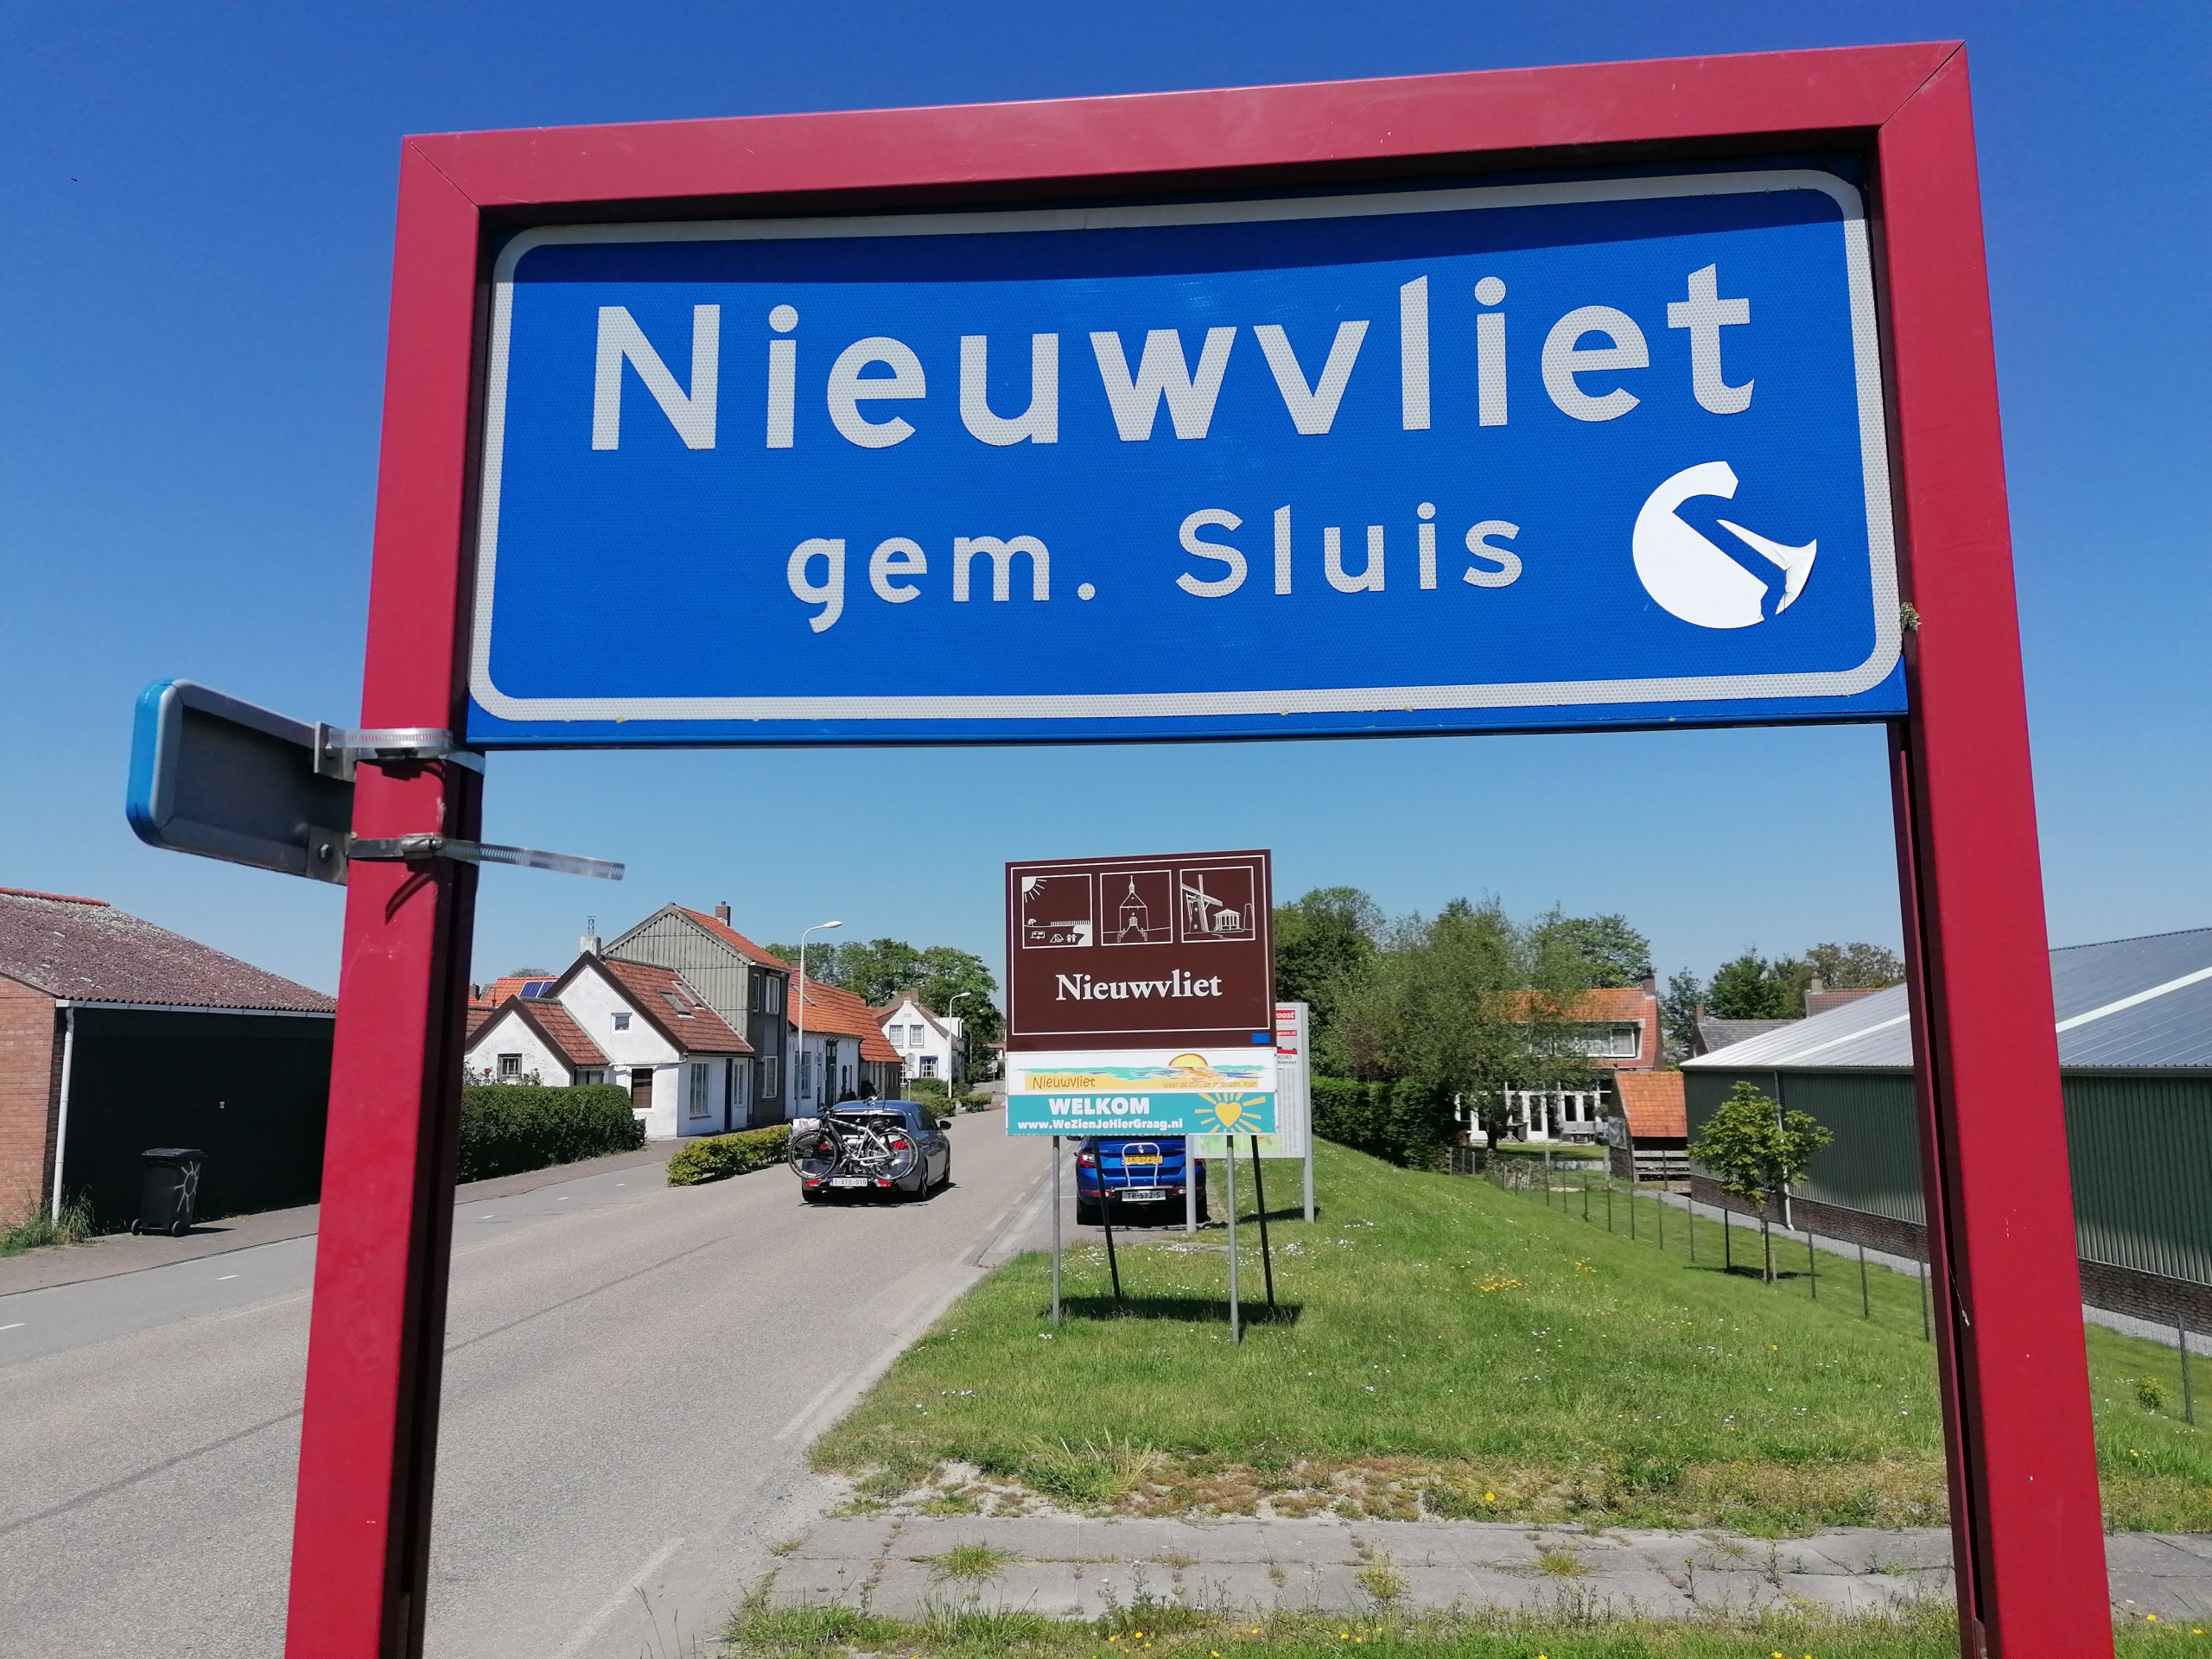 Verkeersonderzoek in de gemeente Sluis